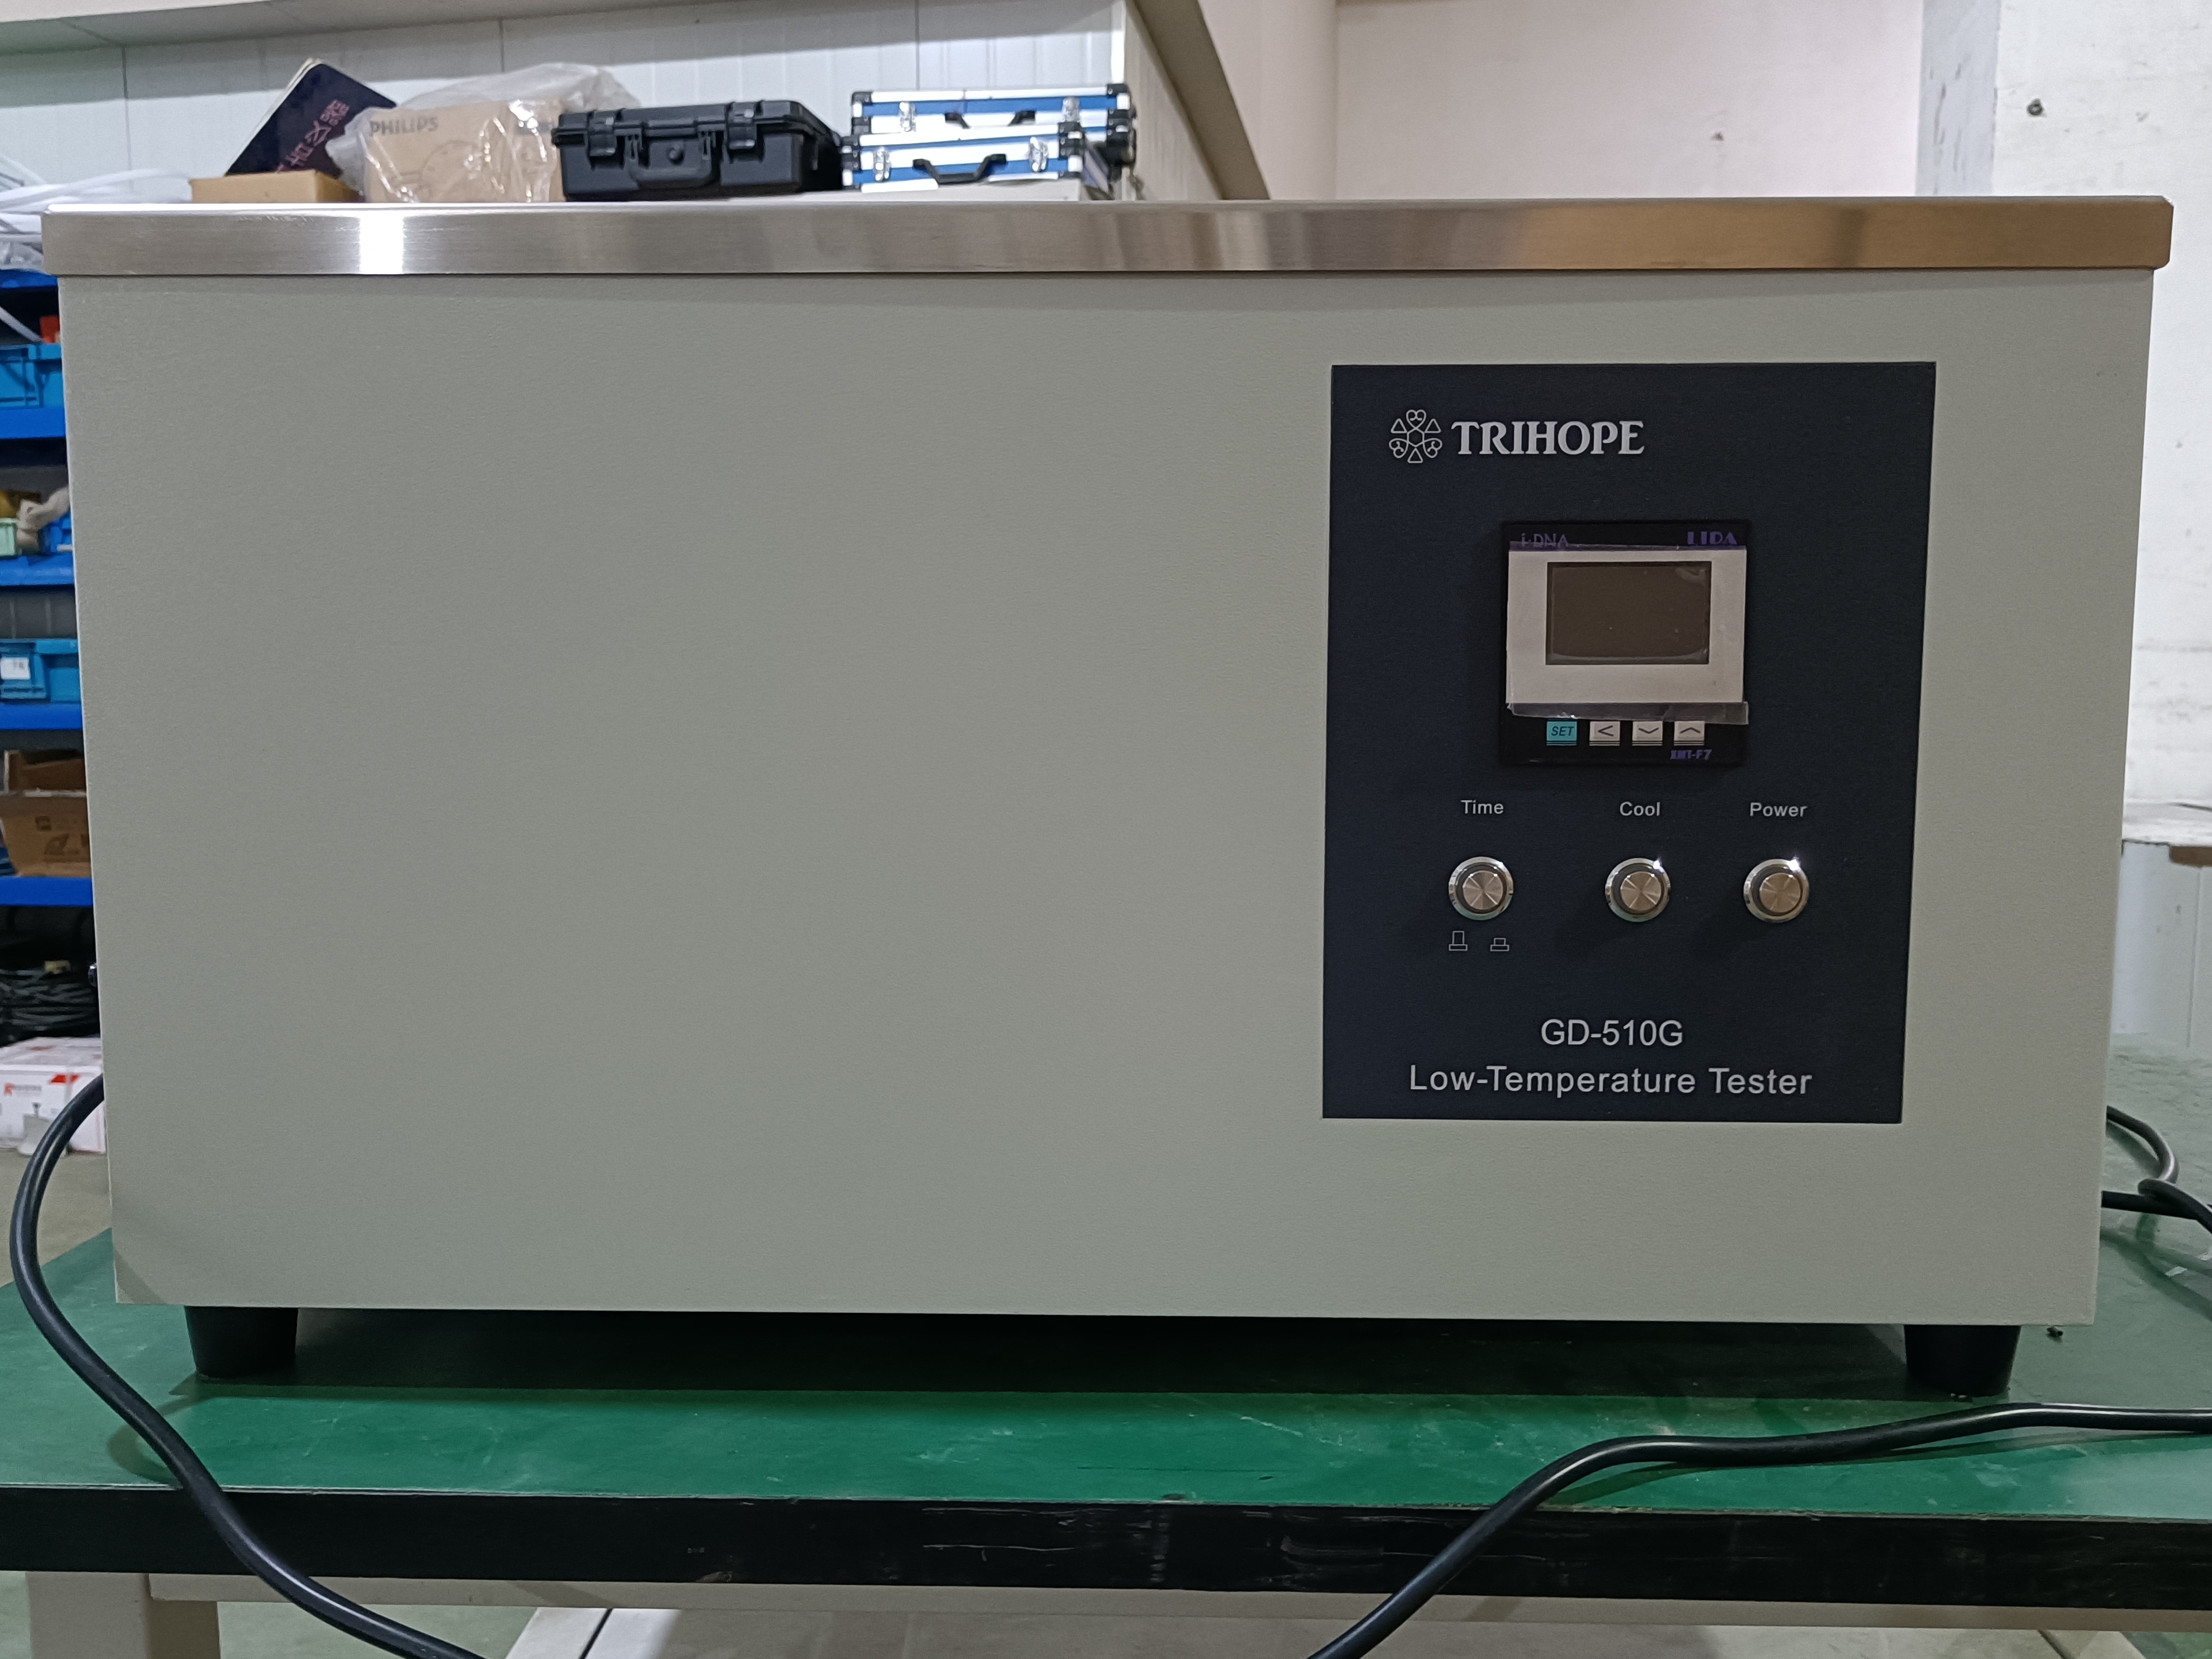 جهاز اختبار درجة الحرارة المنخفضة لزيت المحولات Gd-510